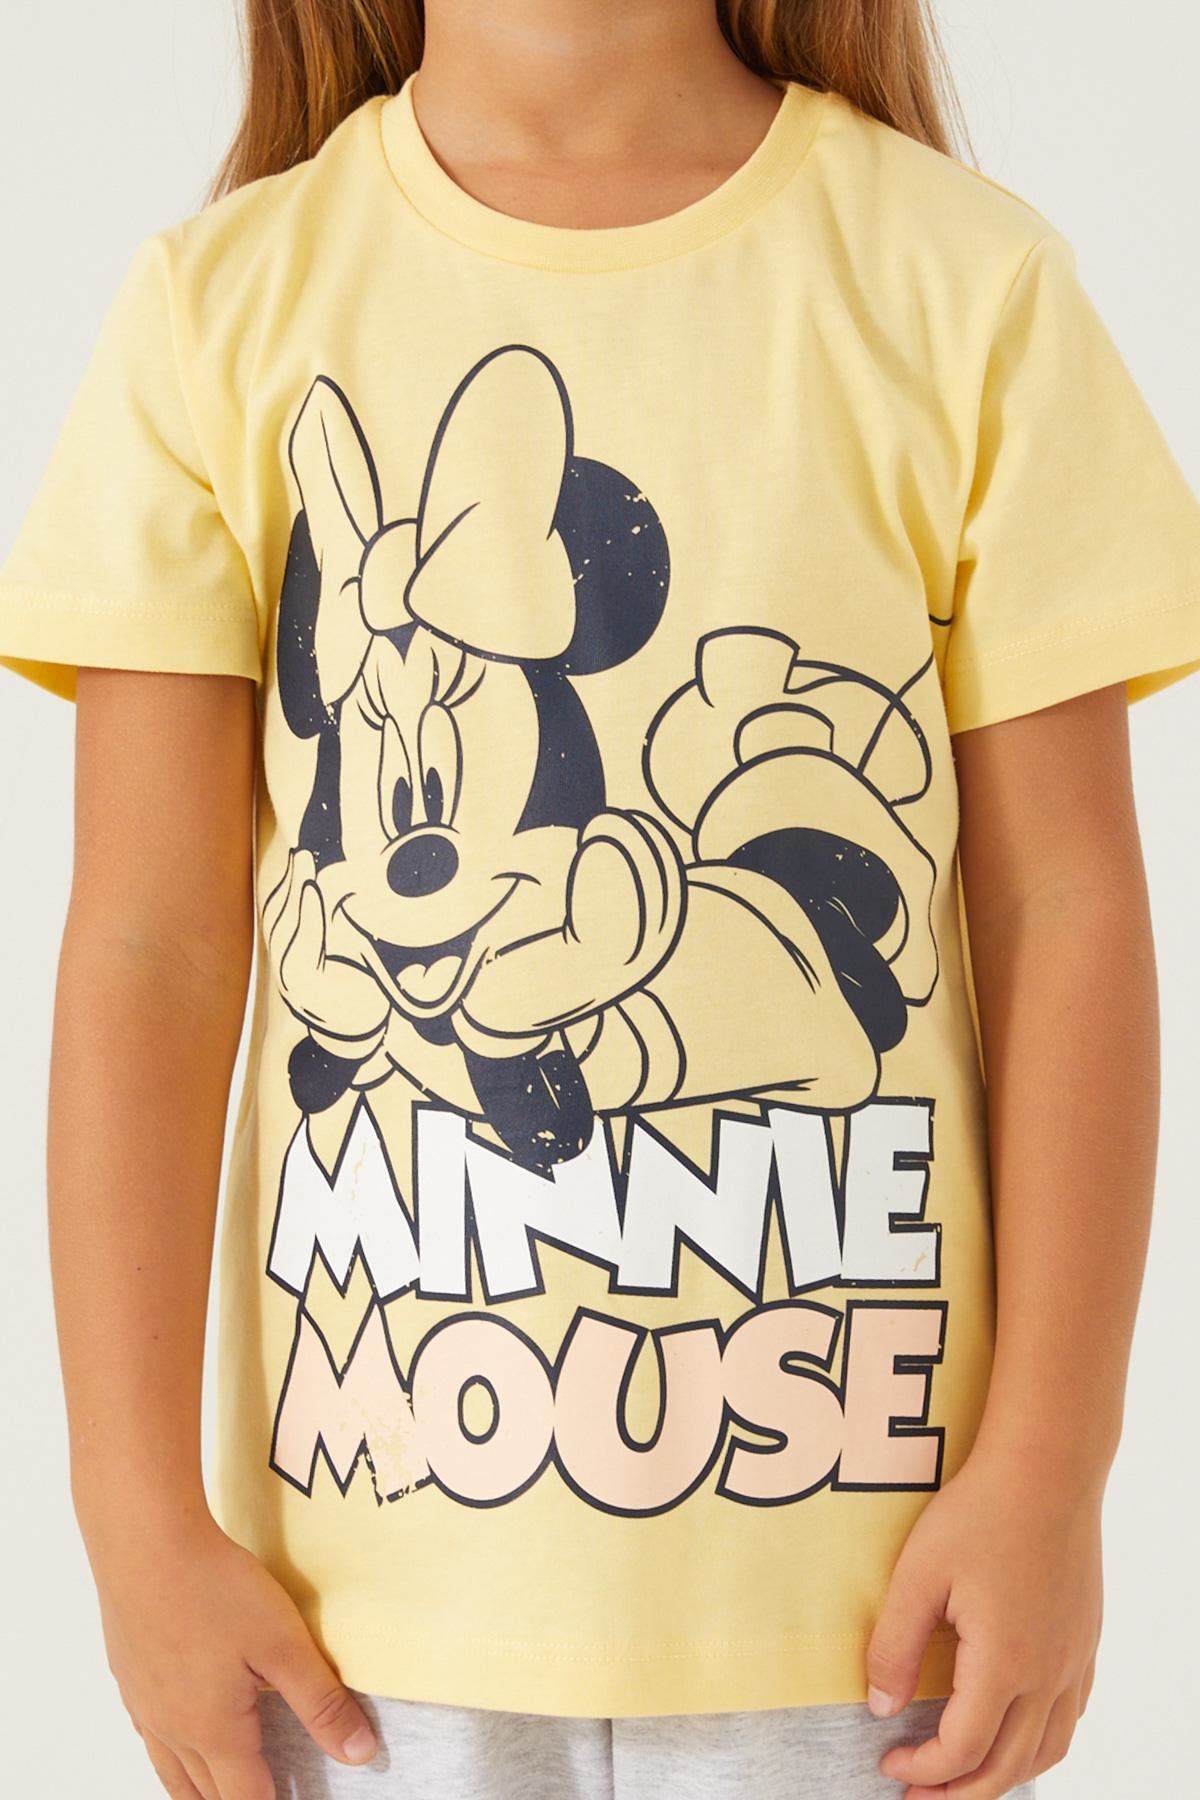 3-9 Yaş Lisanslı Minnie Mouse Kız Çocuk Takım -Puding Sarısı